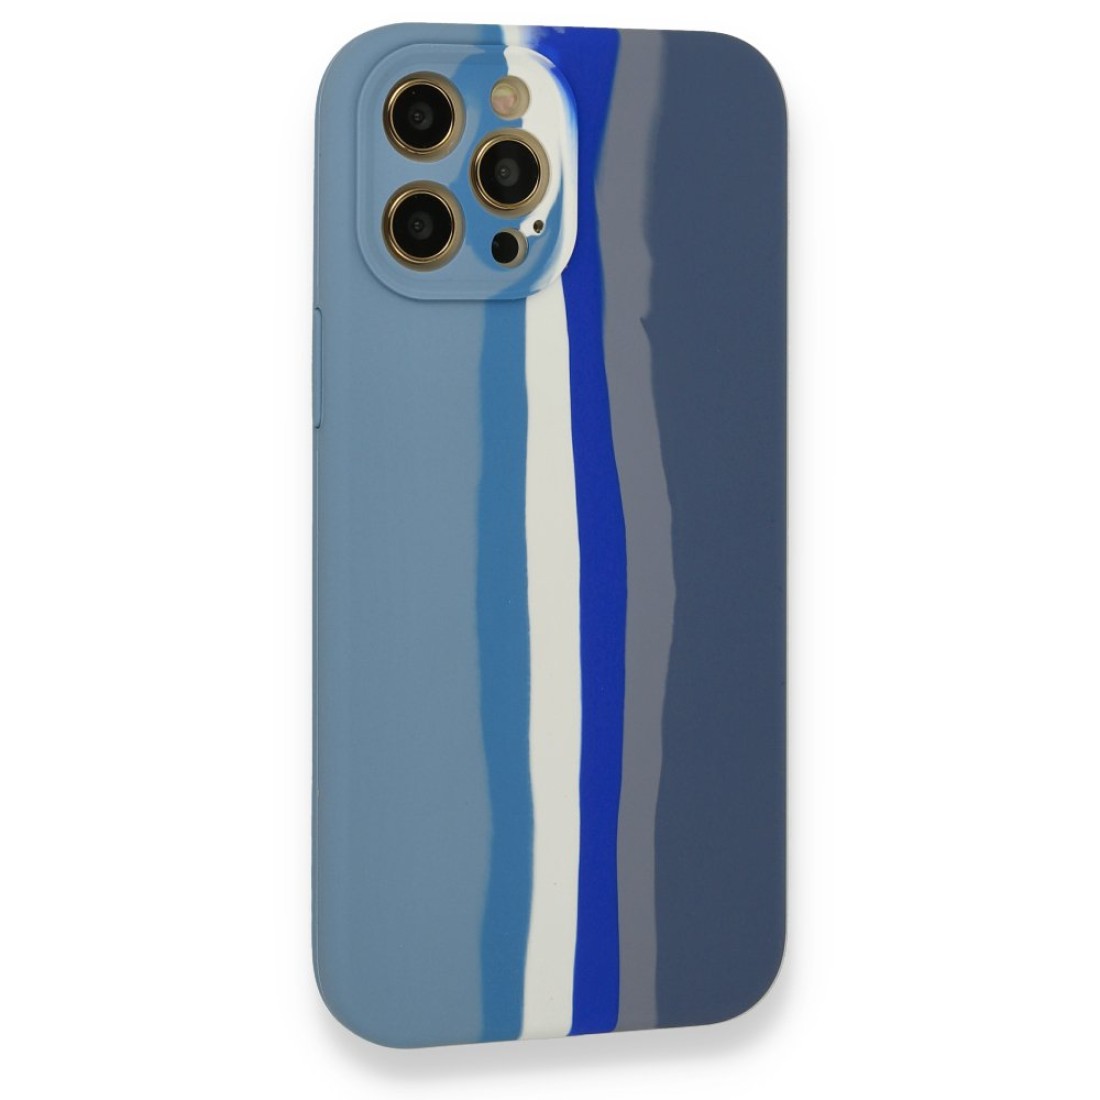 Apple iPhone 12 Pro Kılıf Ebruli Lansman Silikon - Mavi-Gri